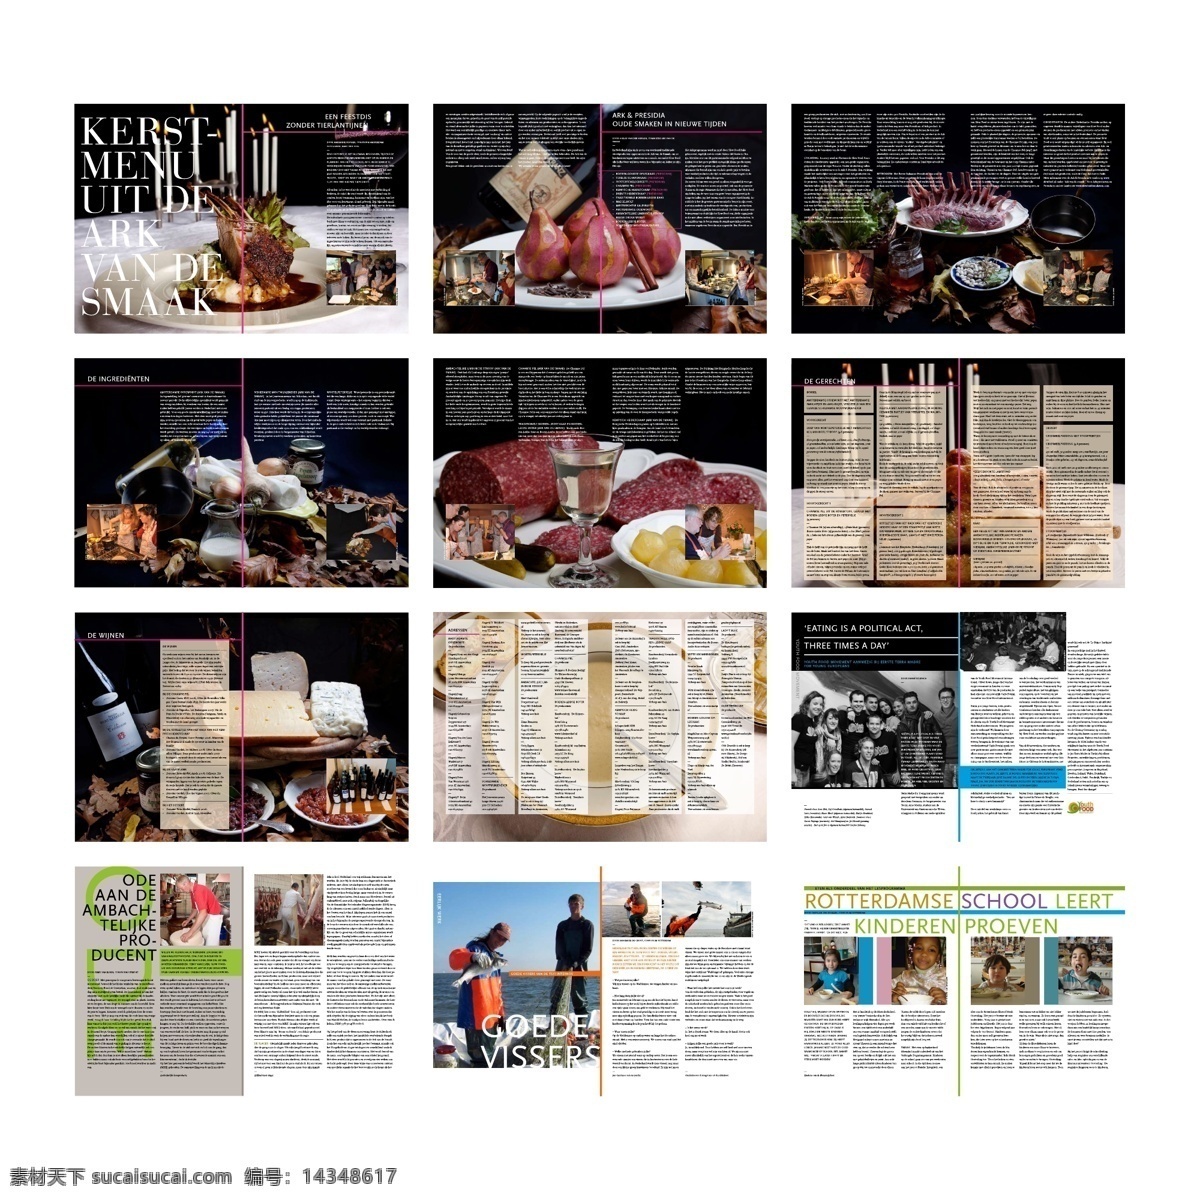 杂志画册设计 企业画册 美食杂志 餐饮 创意设计 简洁版式 画册设计 杂志封面设计 封面设计 版式设计 杂志设计 杂志版式 白色